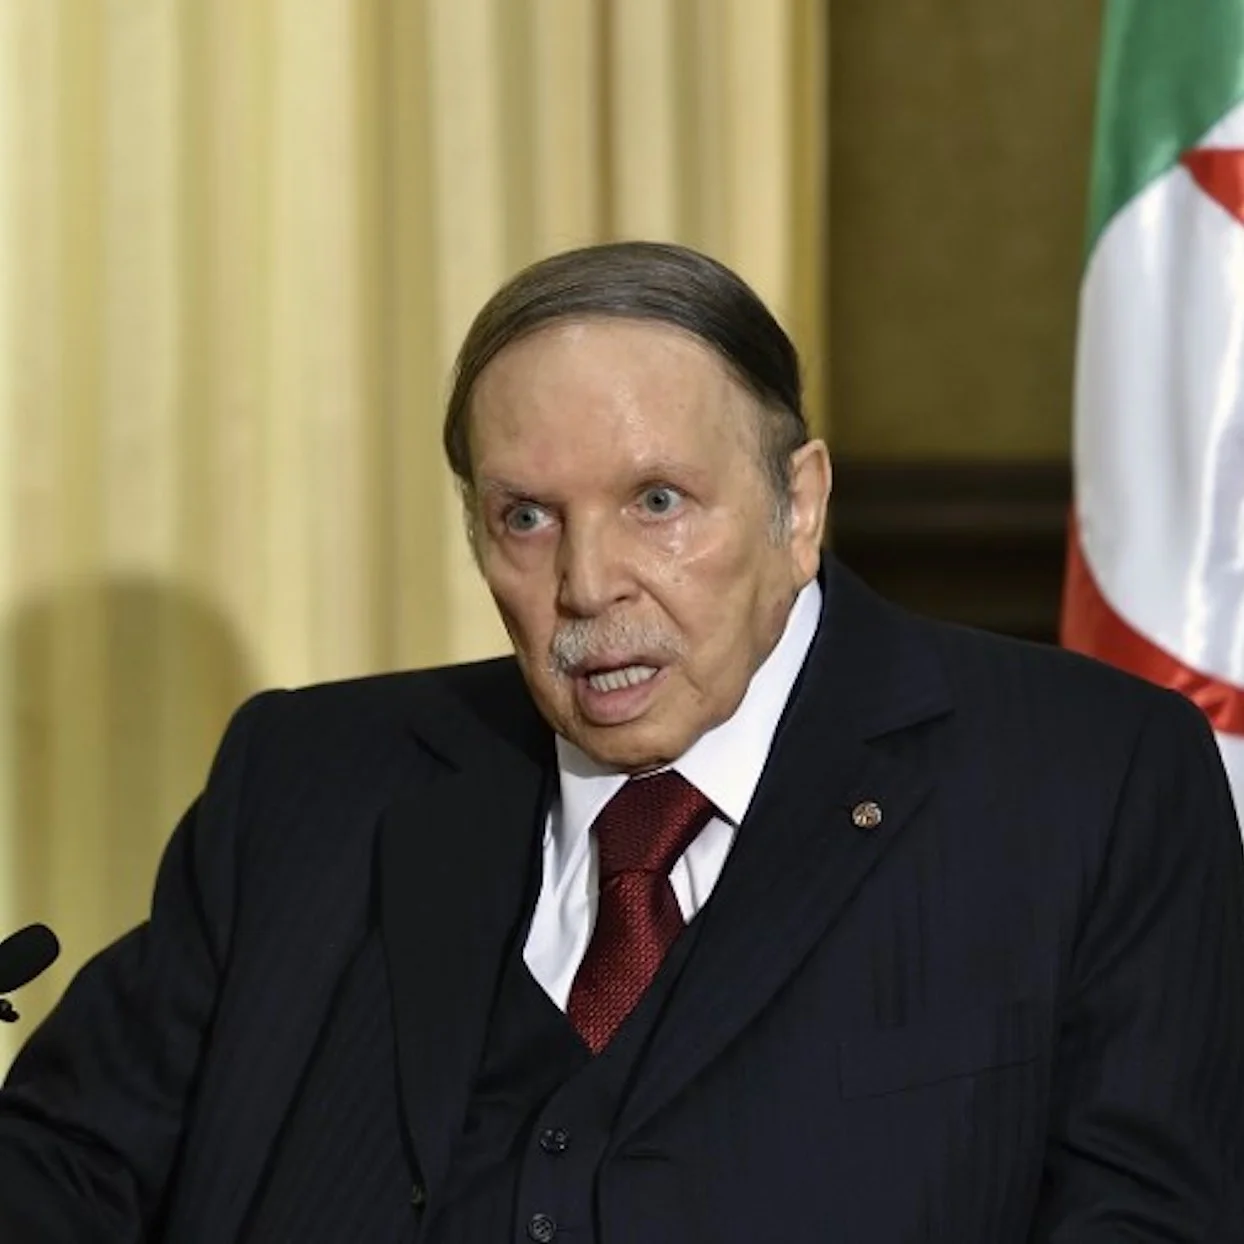 Le grand n’importe quoi des réseaux sociaux, spécial Bouteflika candidat à un 5e mandat